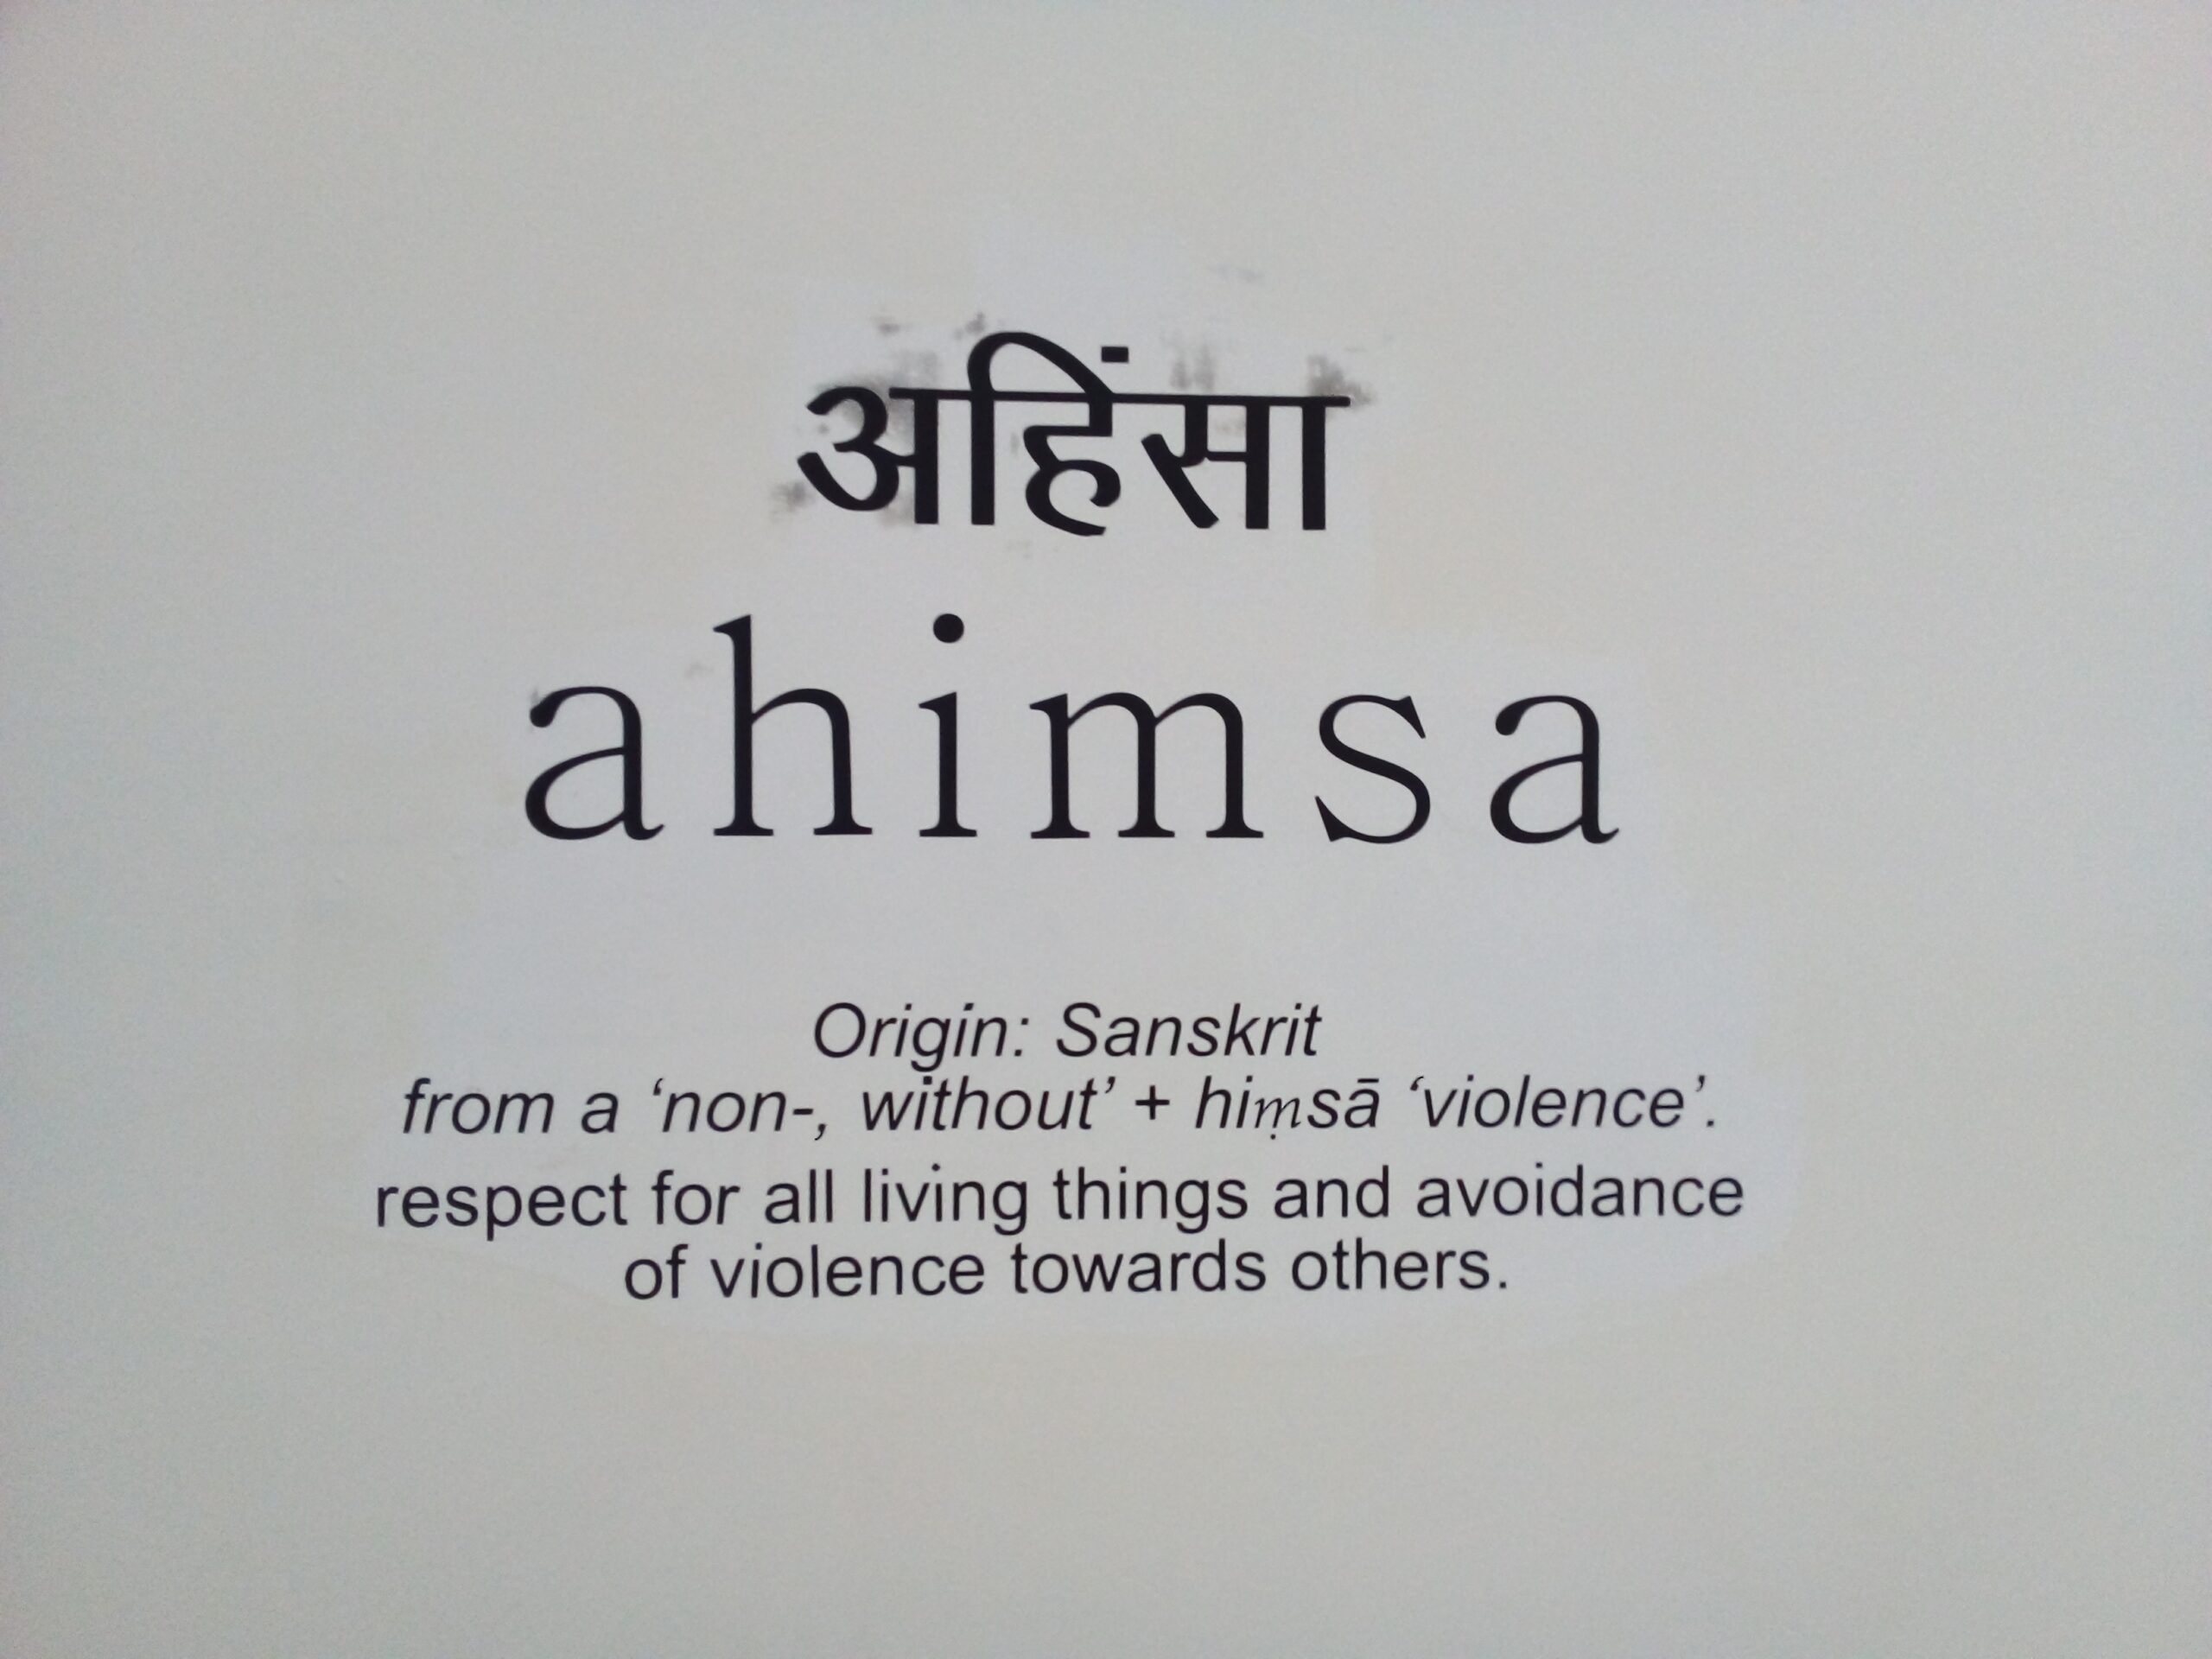 Ahinsa (Hindi Word), Ahimsa (Sanskrit Word) and its Meaning in English